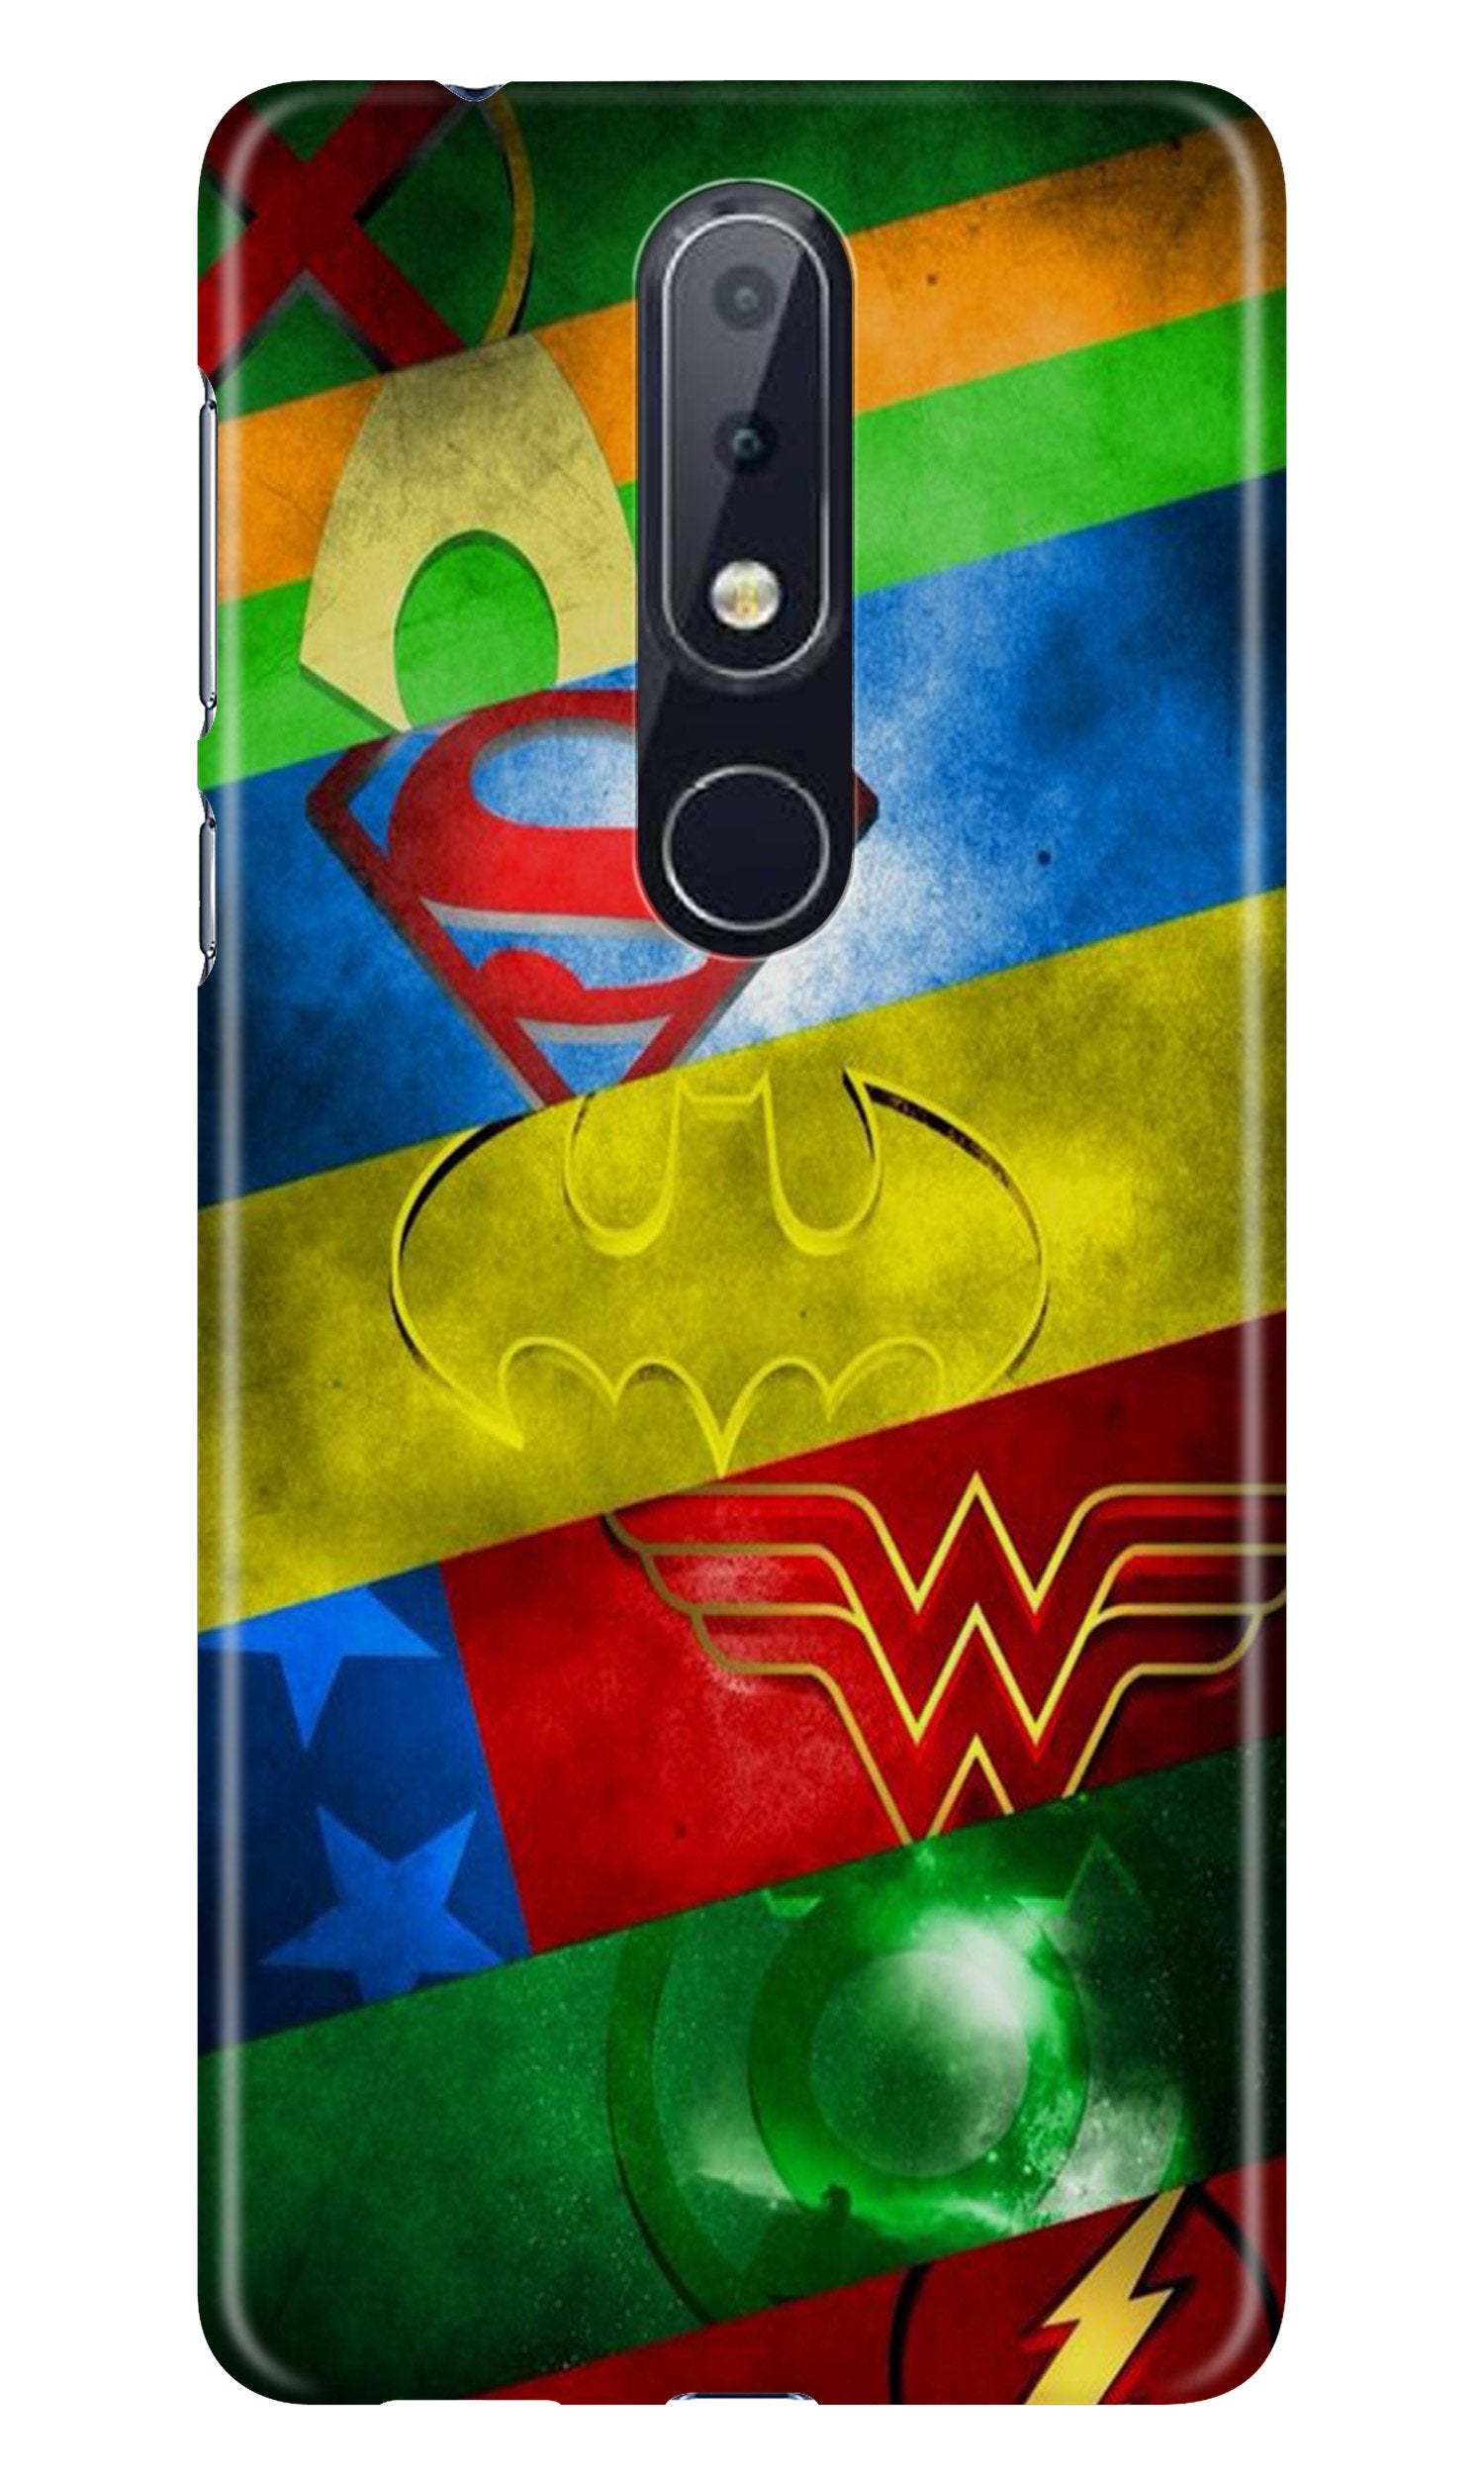 Superheros Logo Case for Nokia 6.1 Plus (Design No. 251)